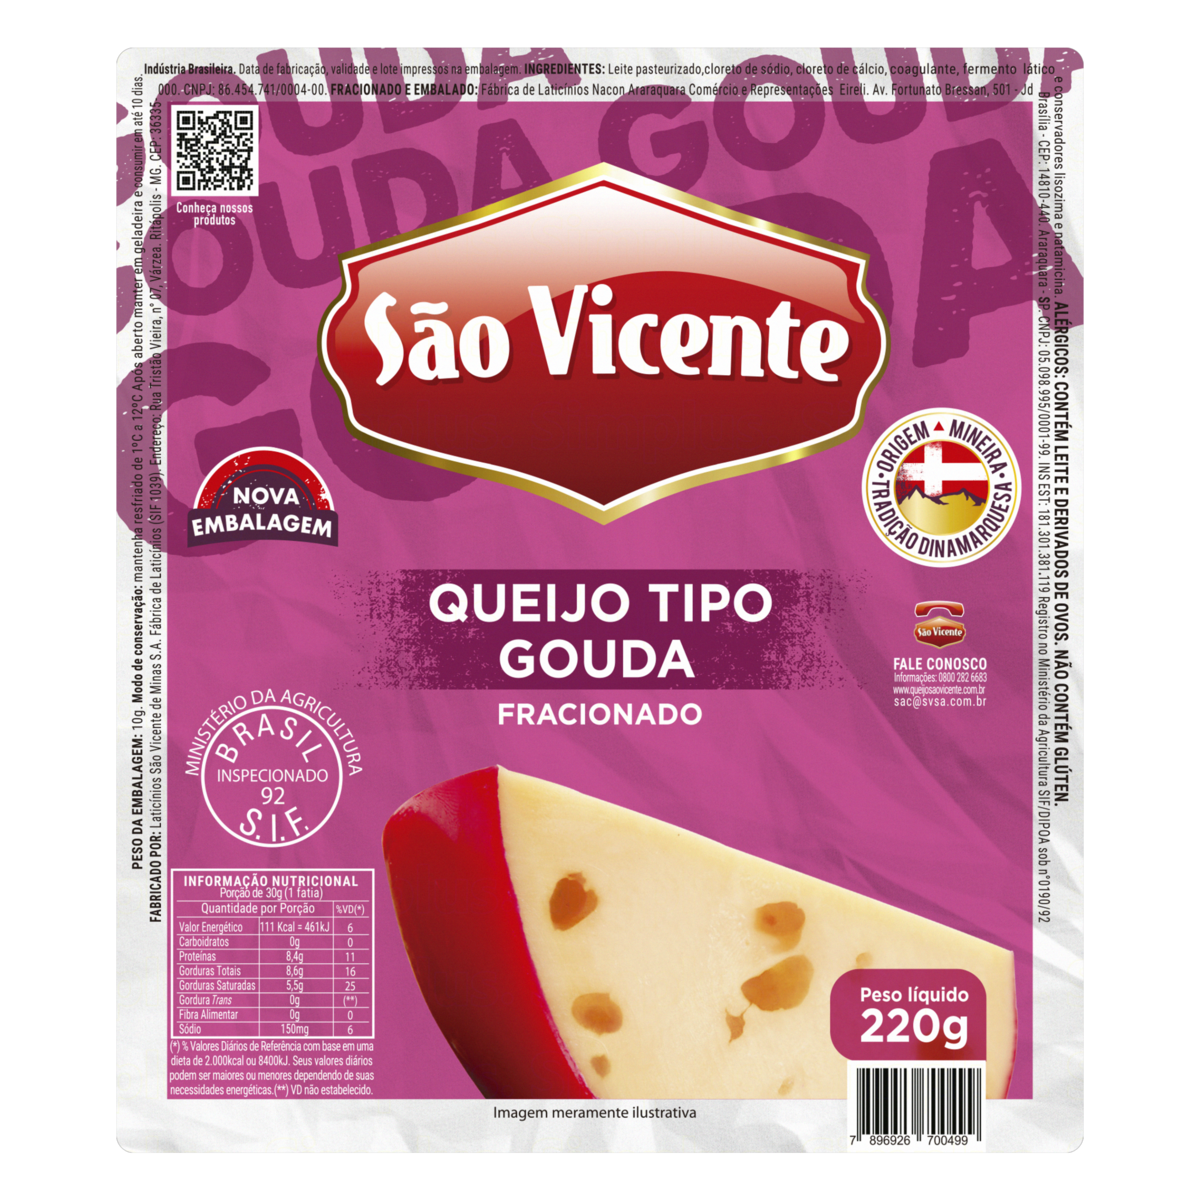 チーズ Queijo Gorgonzola Picante 100g /Preço com imposto de 8% incluso